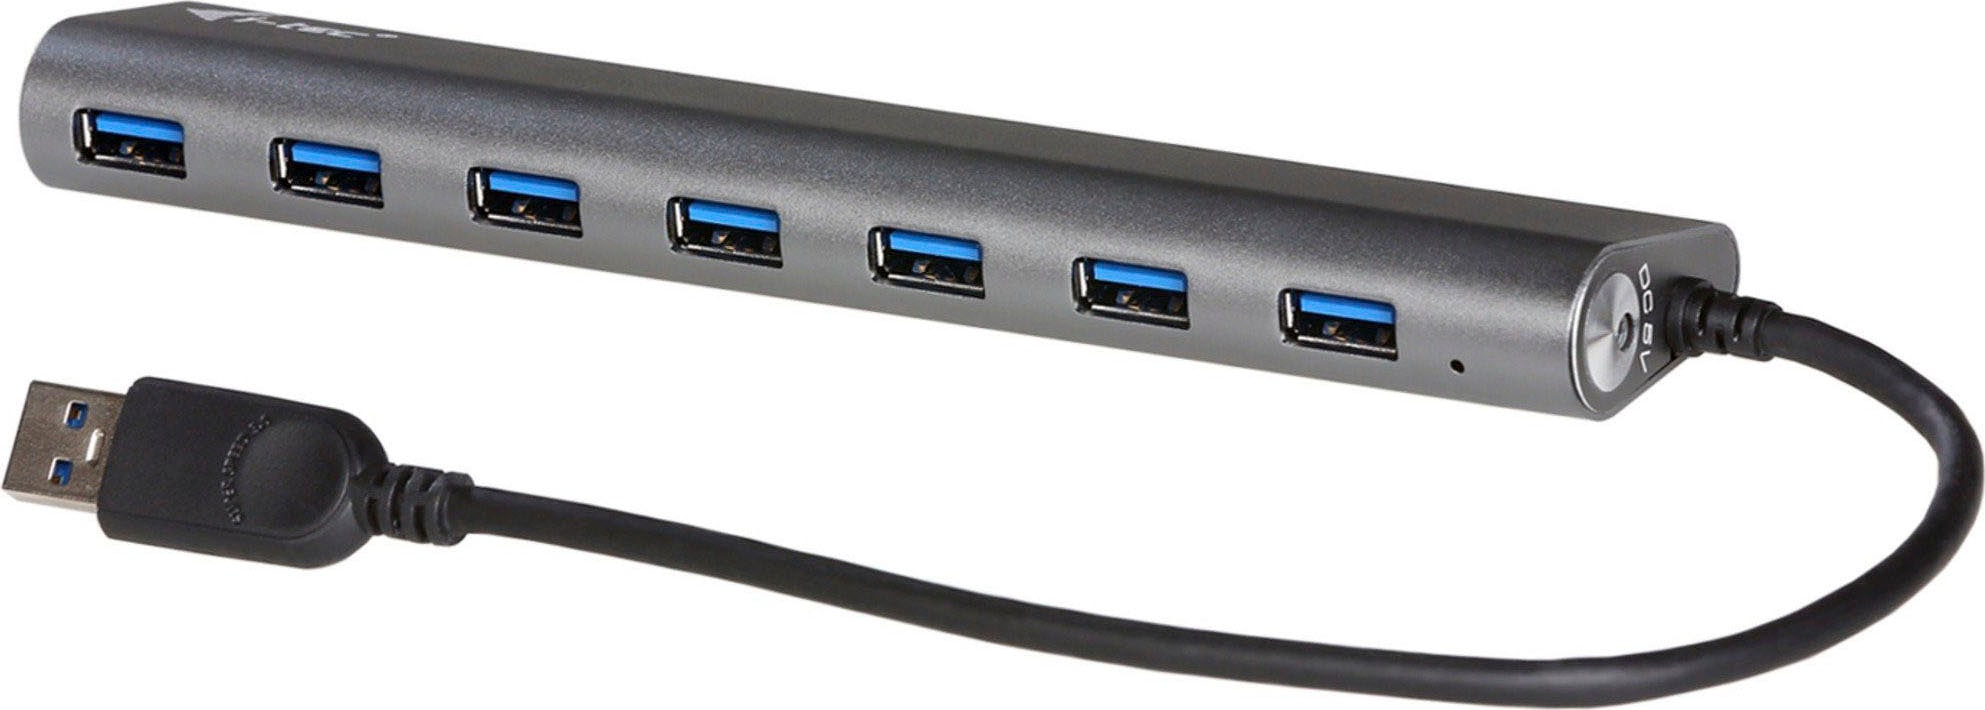 USB-Ladegerät »Superspeed USB 3.0 7-Port Hub«